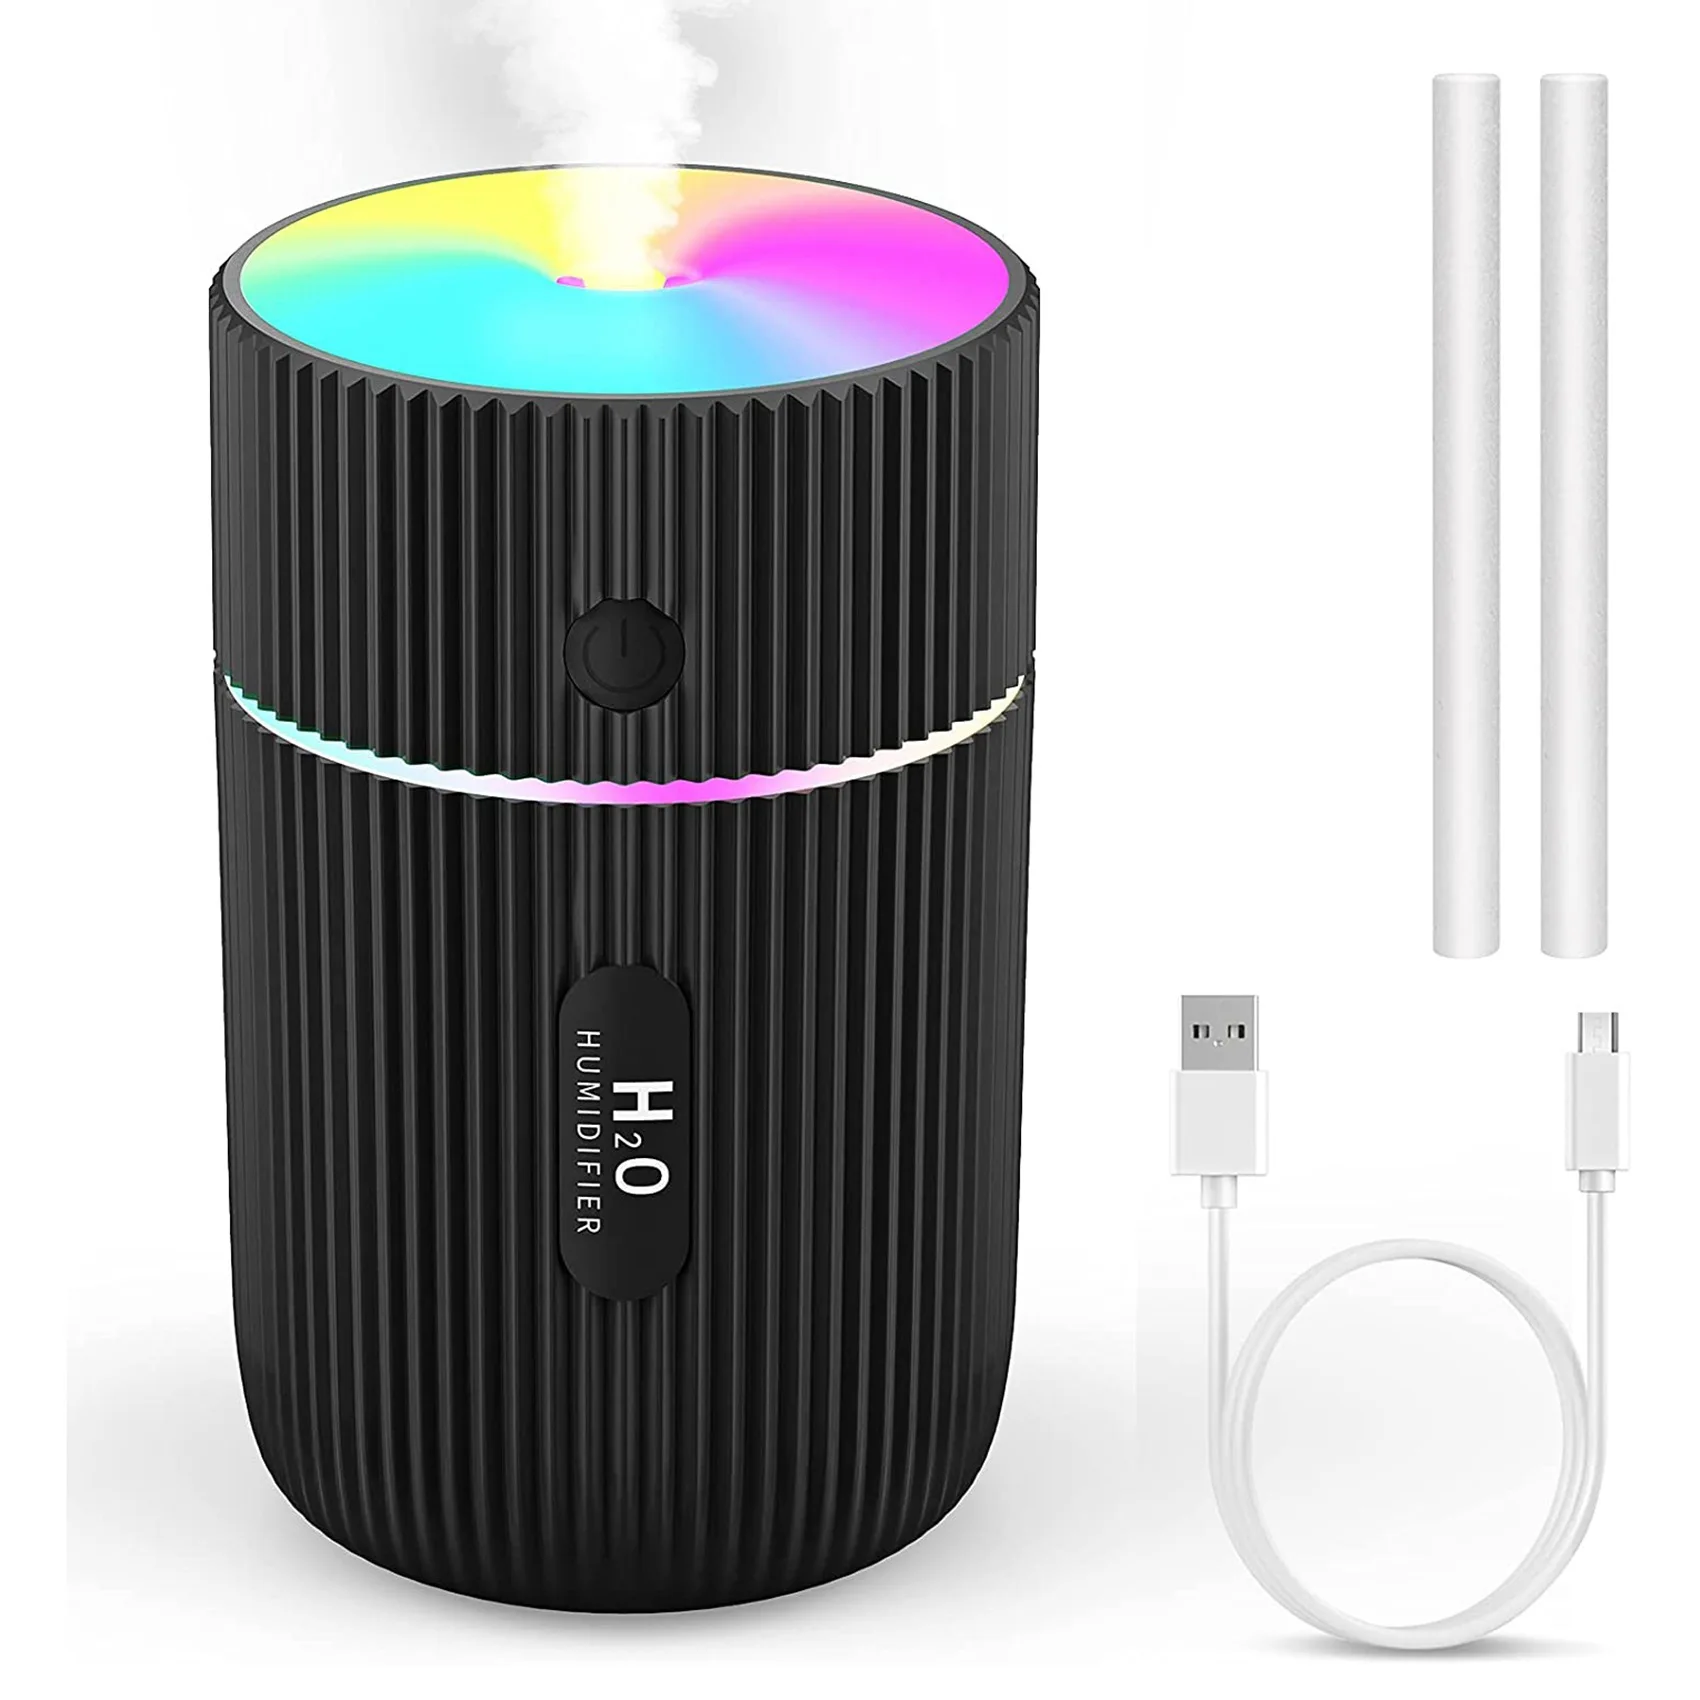 

Увлажнитель воздуха, цветной холодный мини-USB-увлажнитель с 7 цветными фонарями, автоматическое отключение, для автомобиля, офиса, спальни, черный